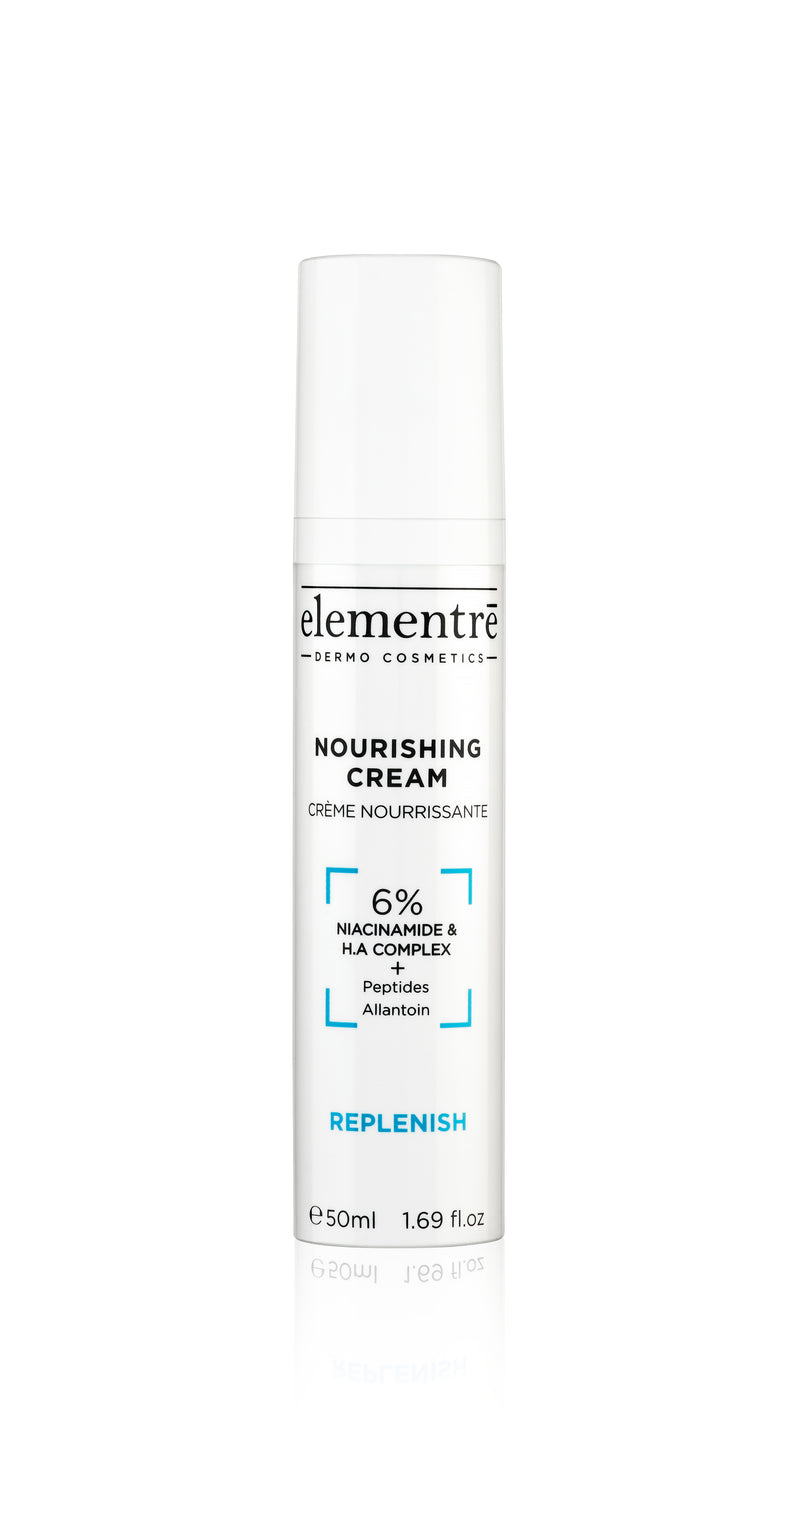 Elementre Dermo Cosmetics Nourishing Cream 50ml